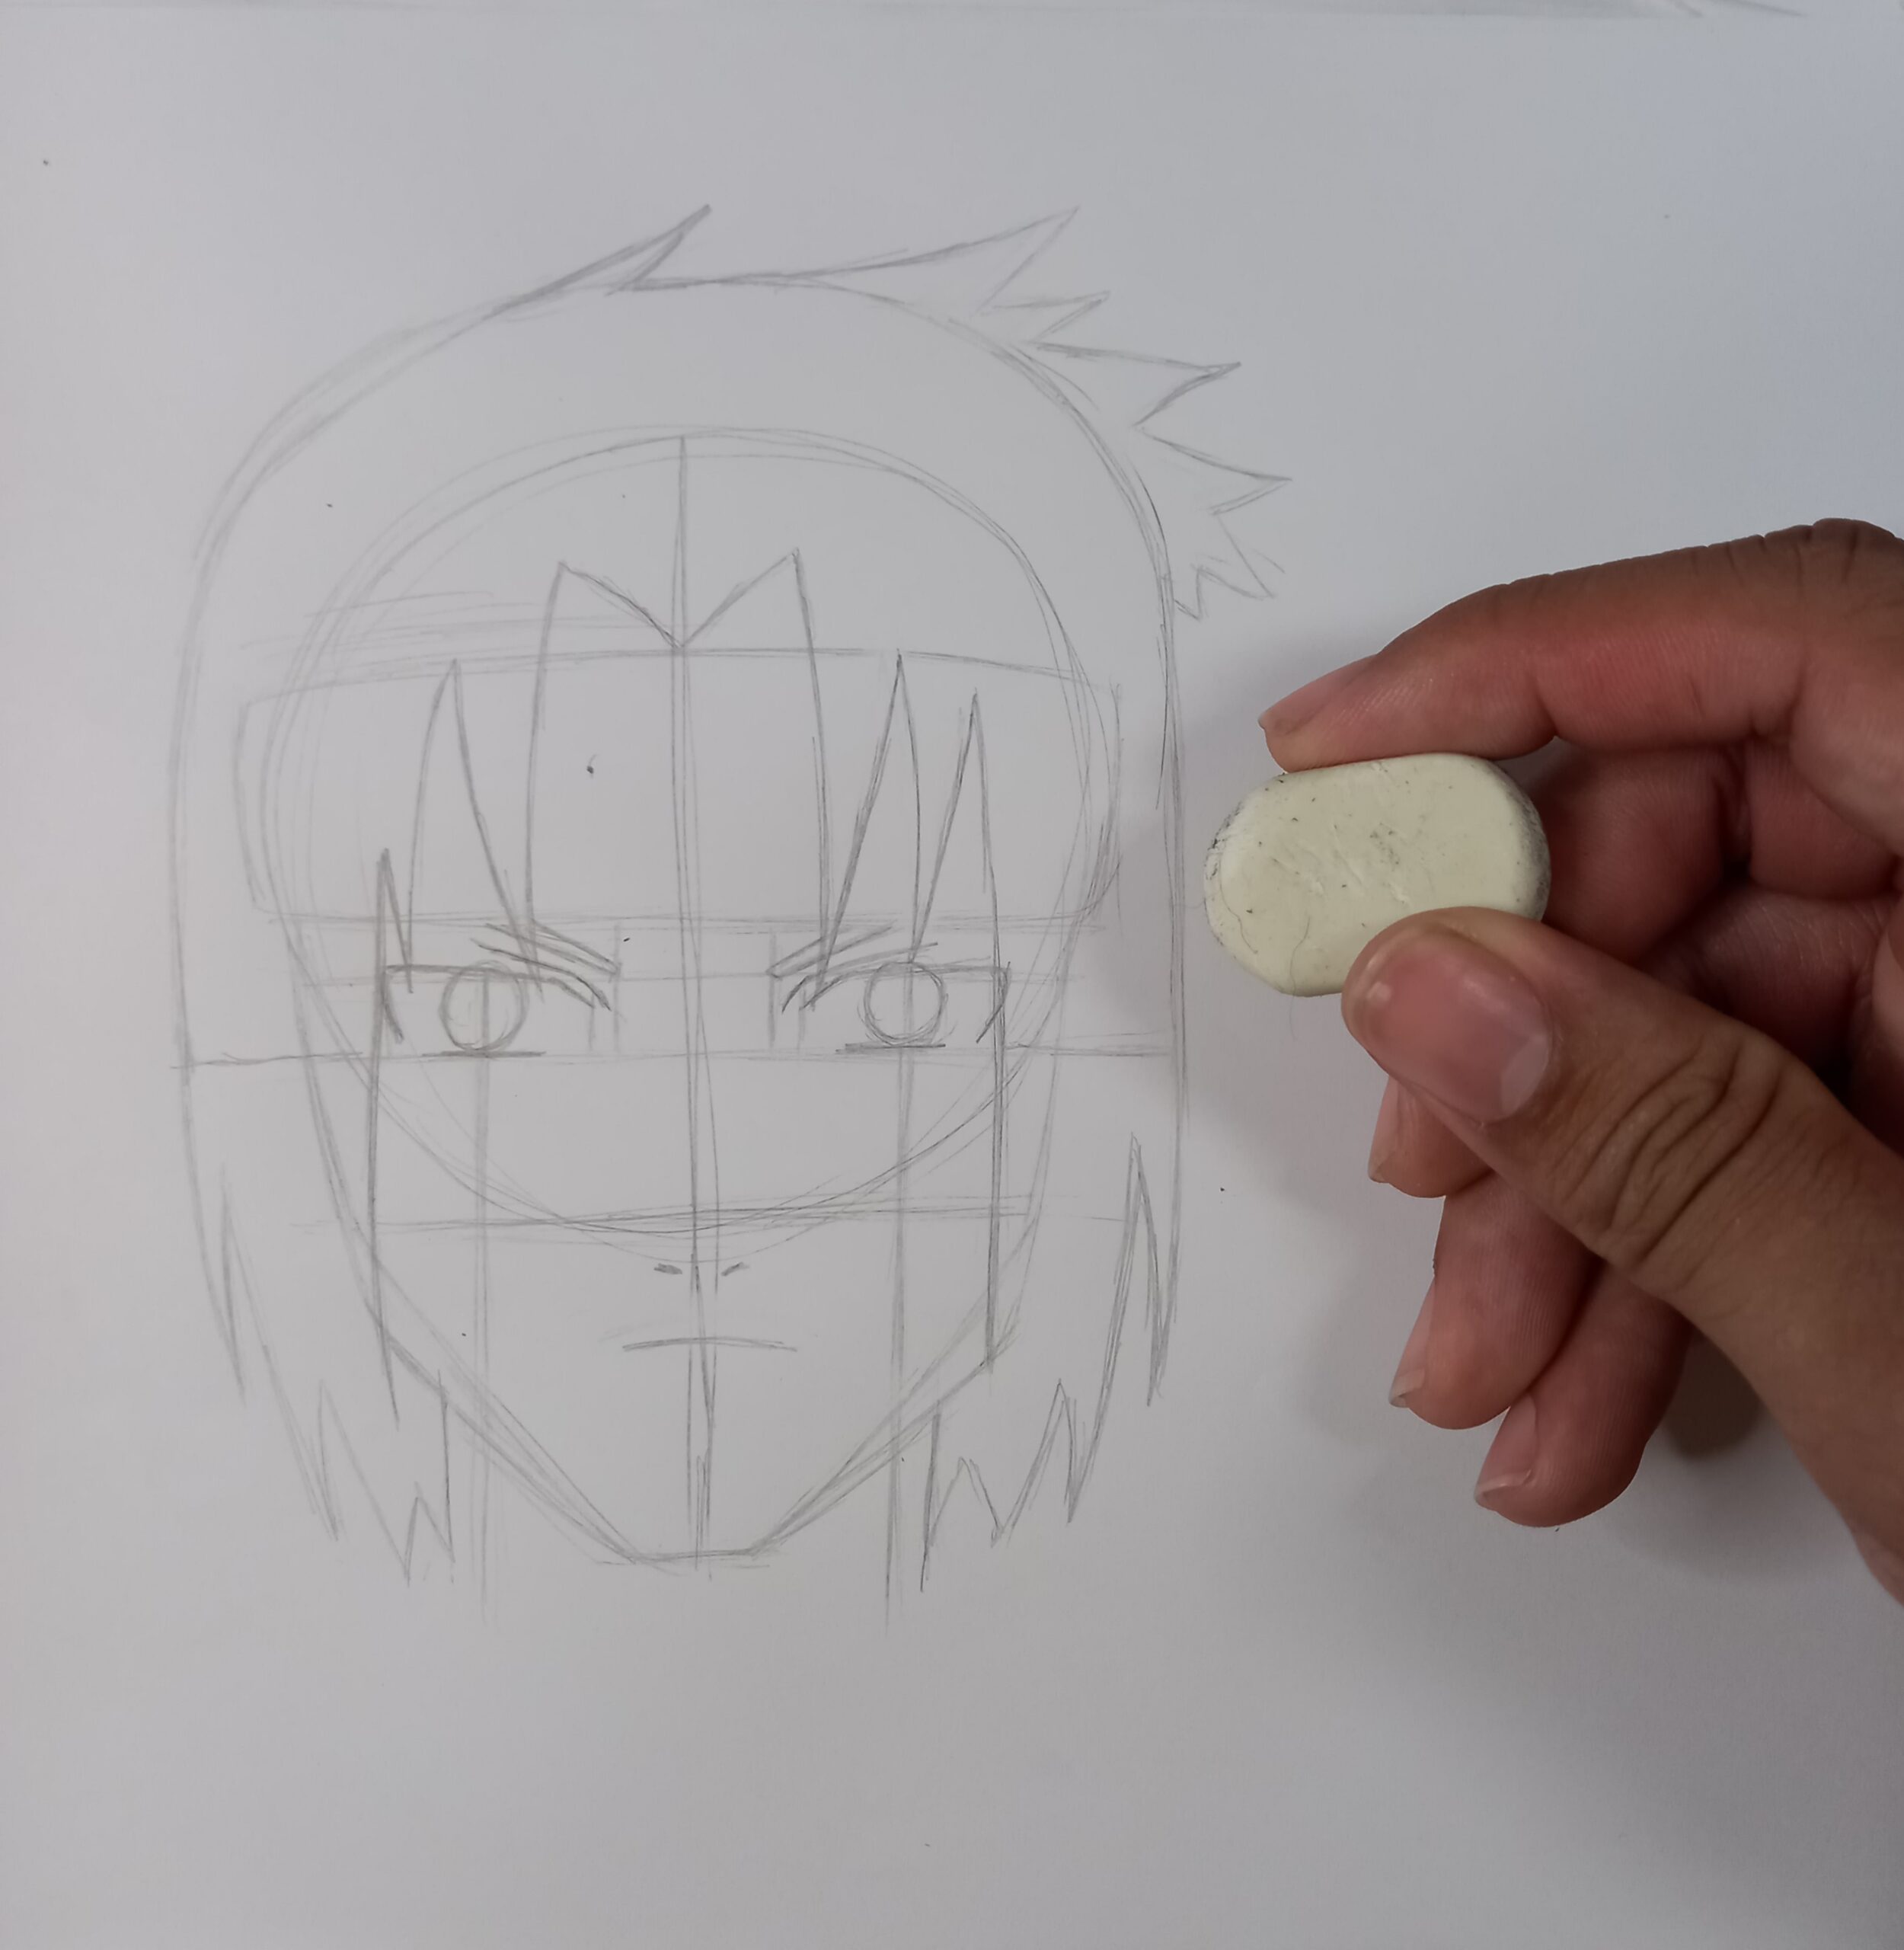 Aprenda a desenhar o Sasuke em 20 passos muito simples e fácil